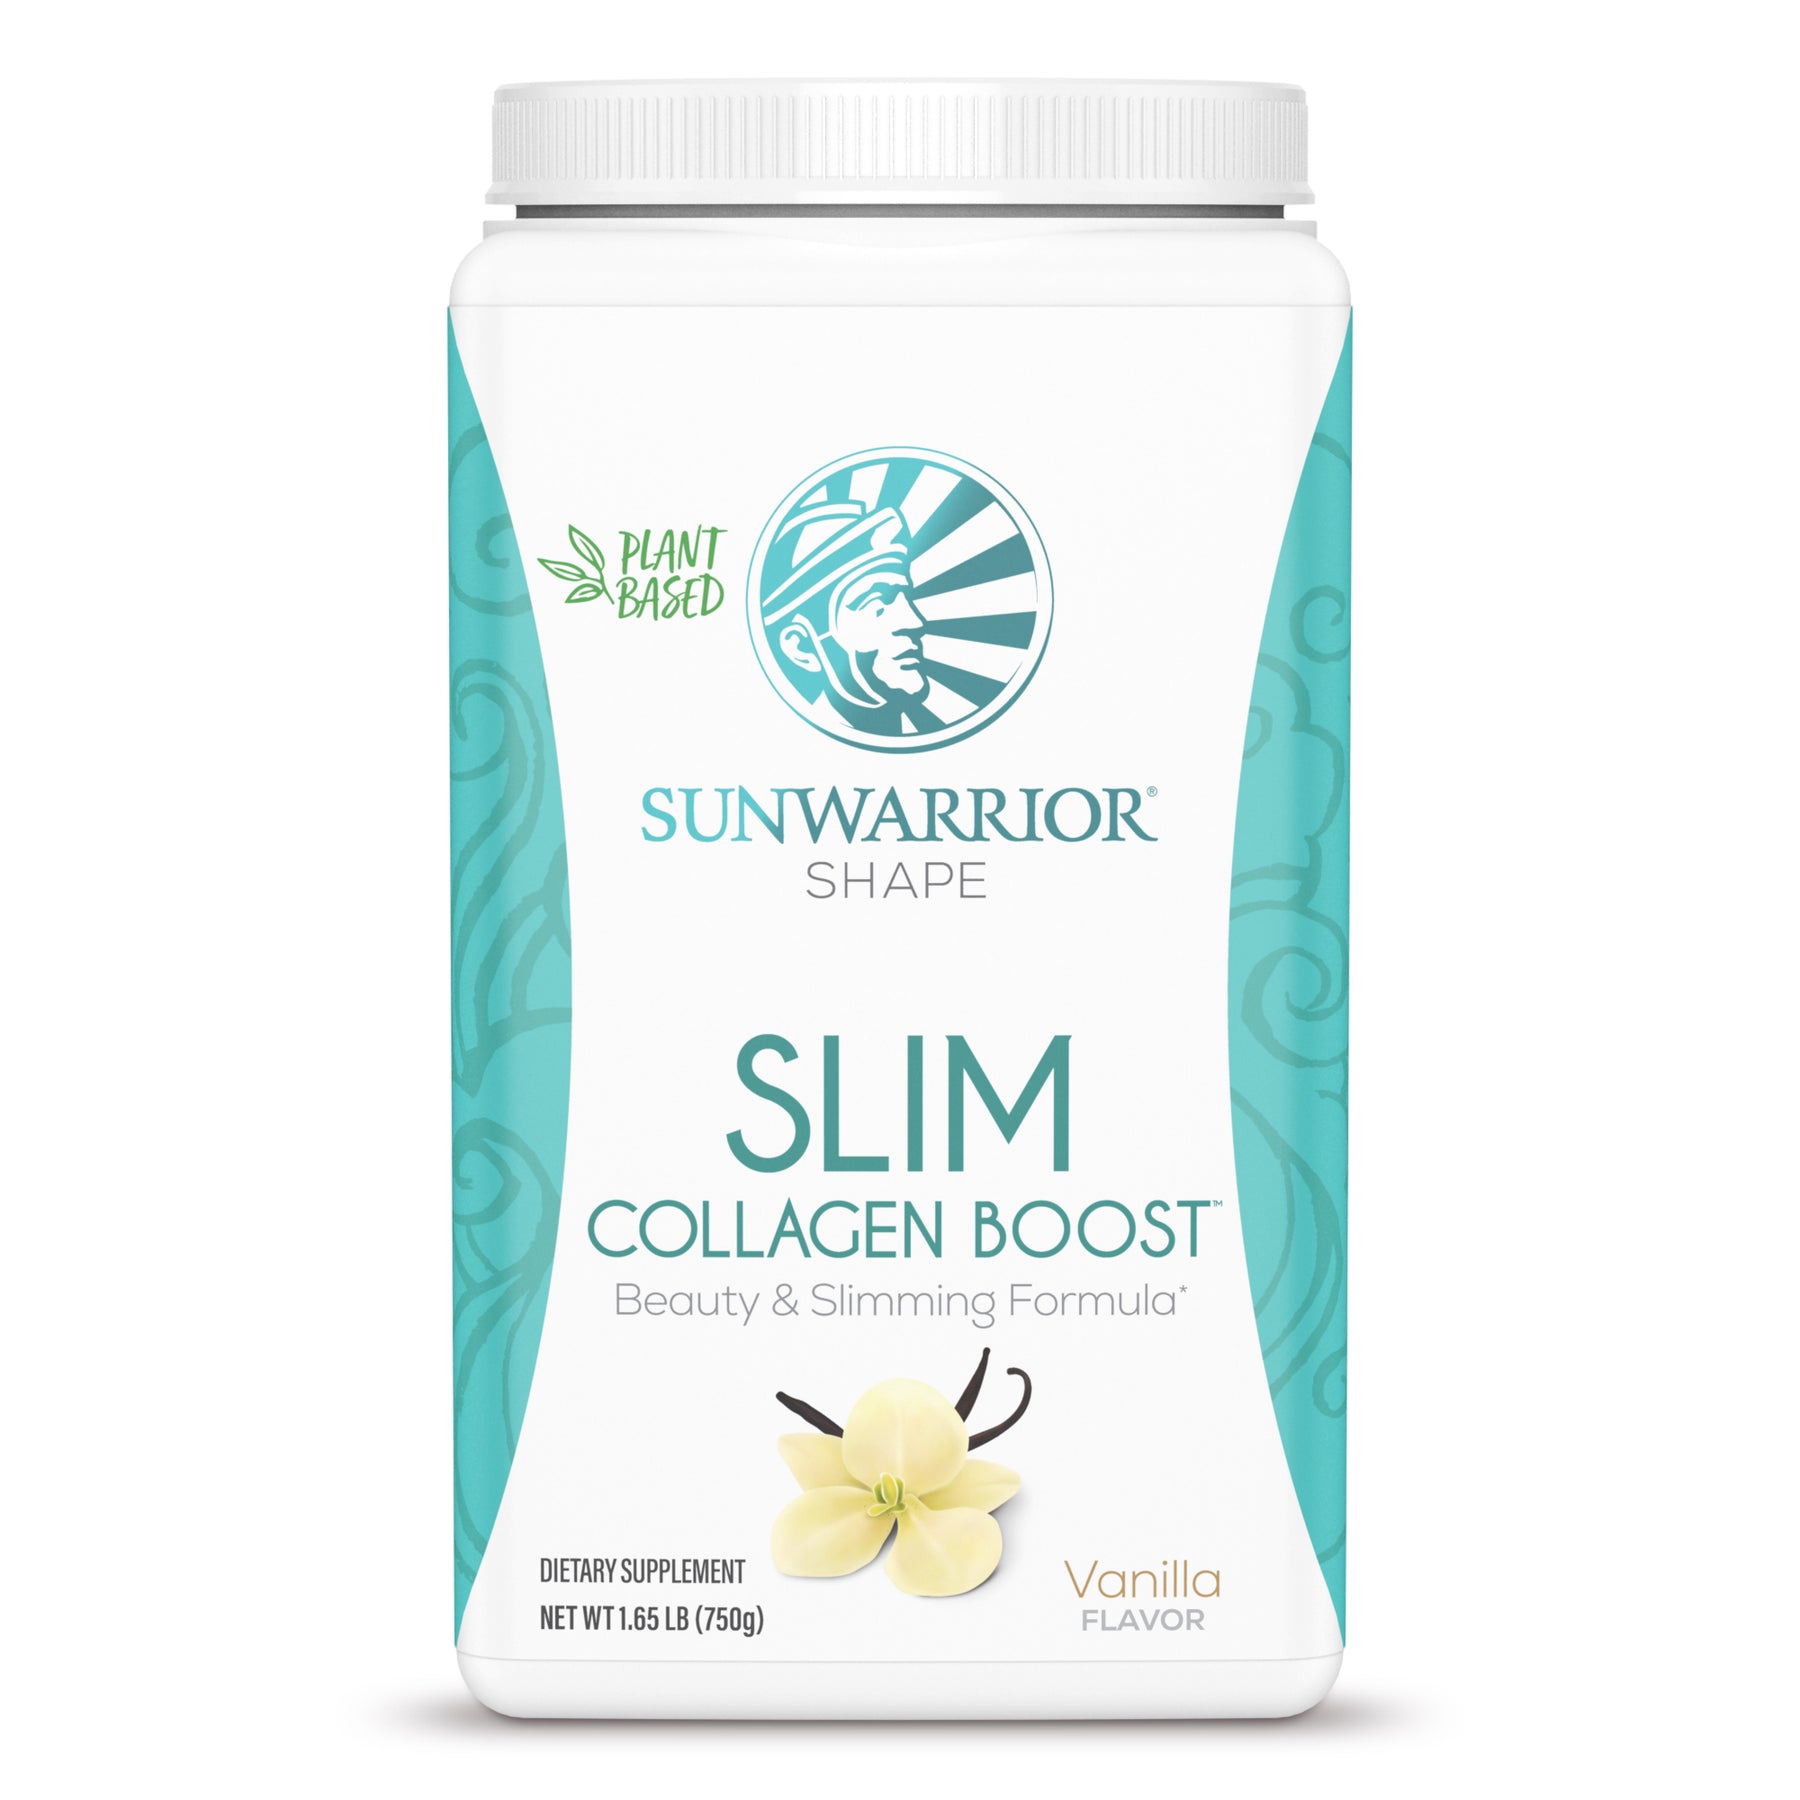 Shape - SLIM Collagen Boost